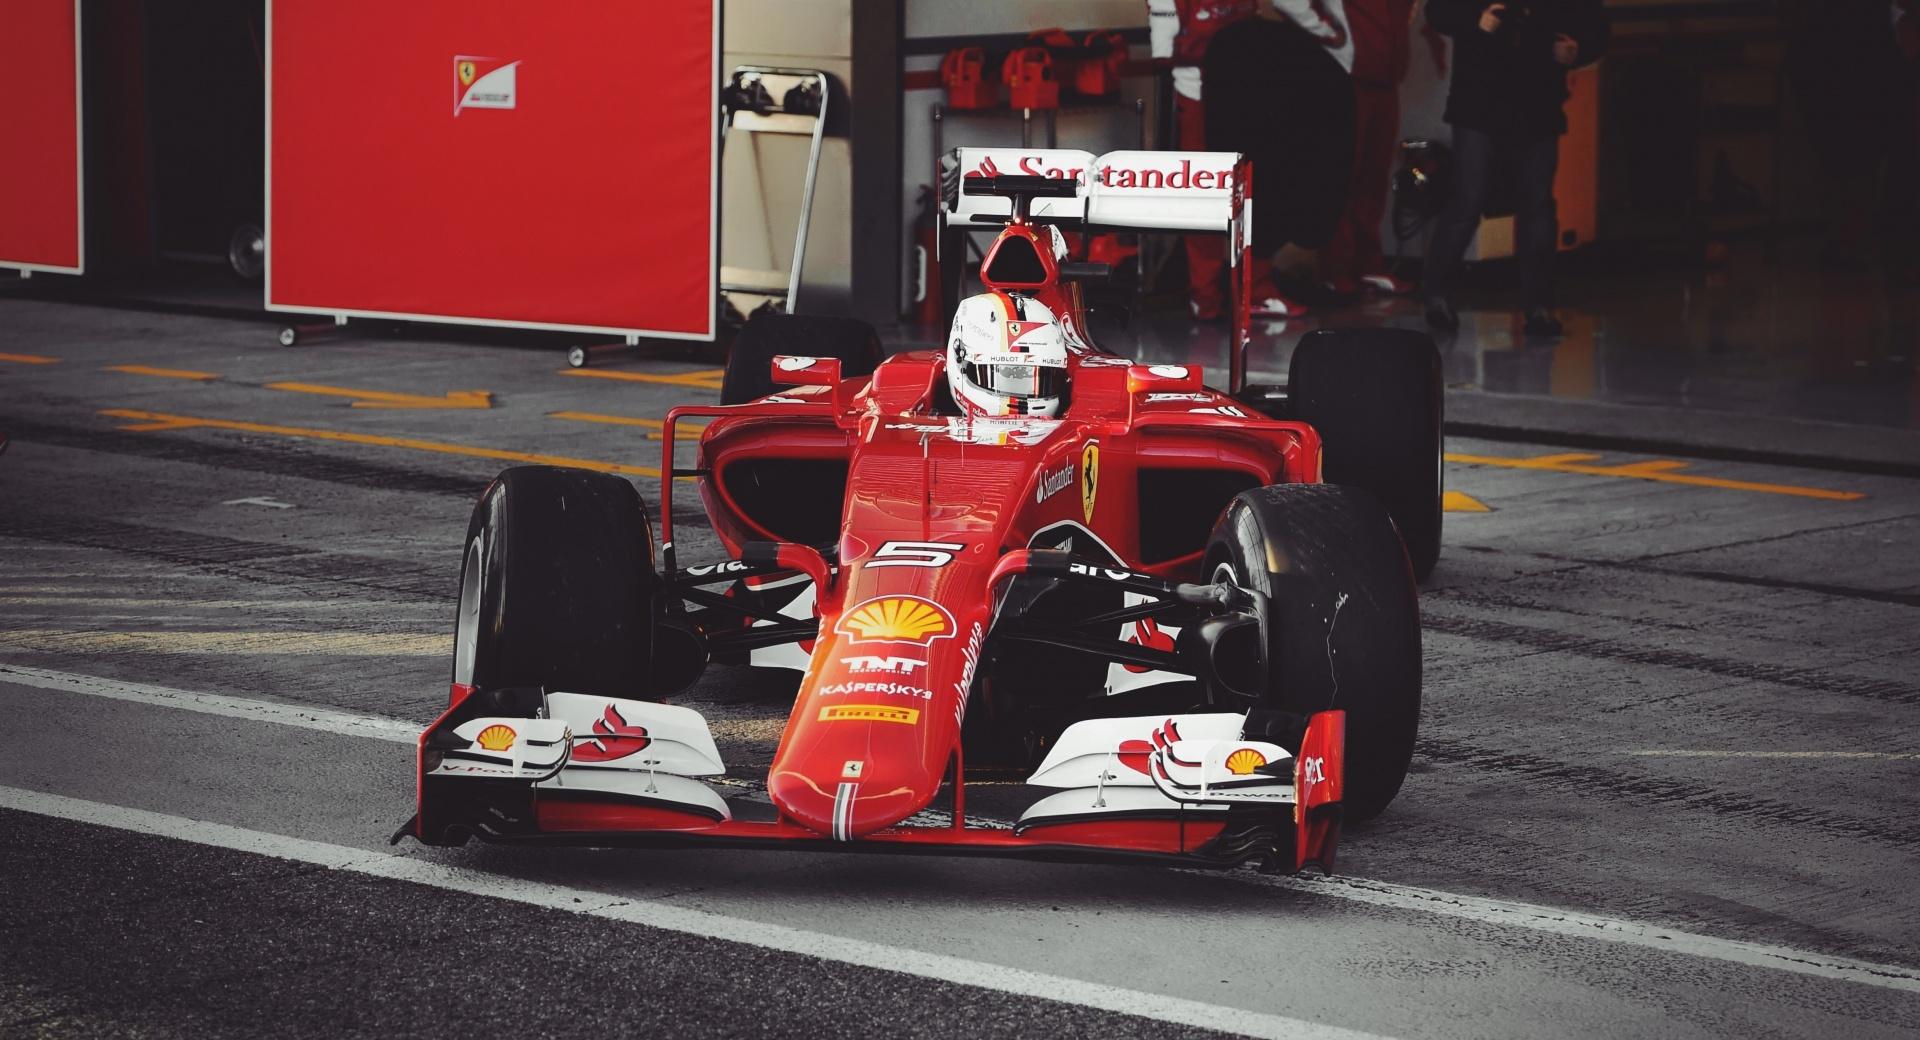 Vettel Ferrari 2015 at 1024 x 768 size wallpapers HD quality